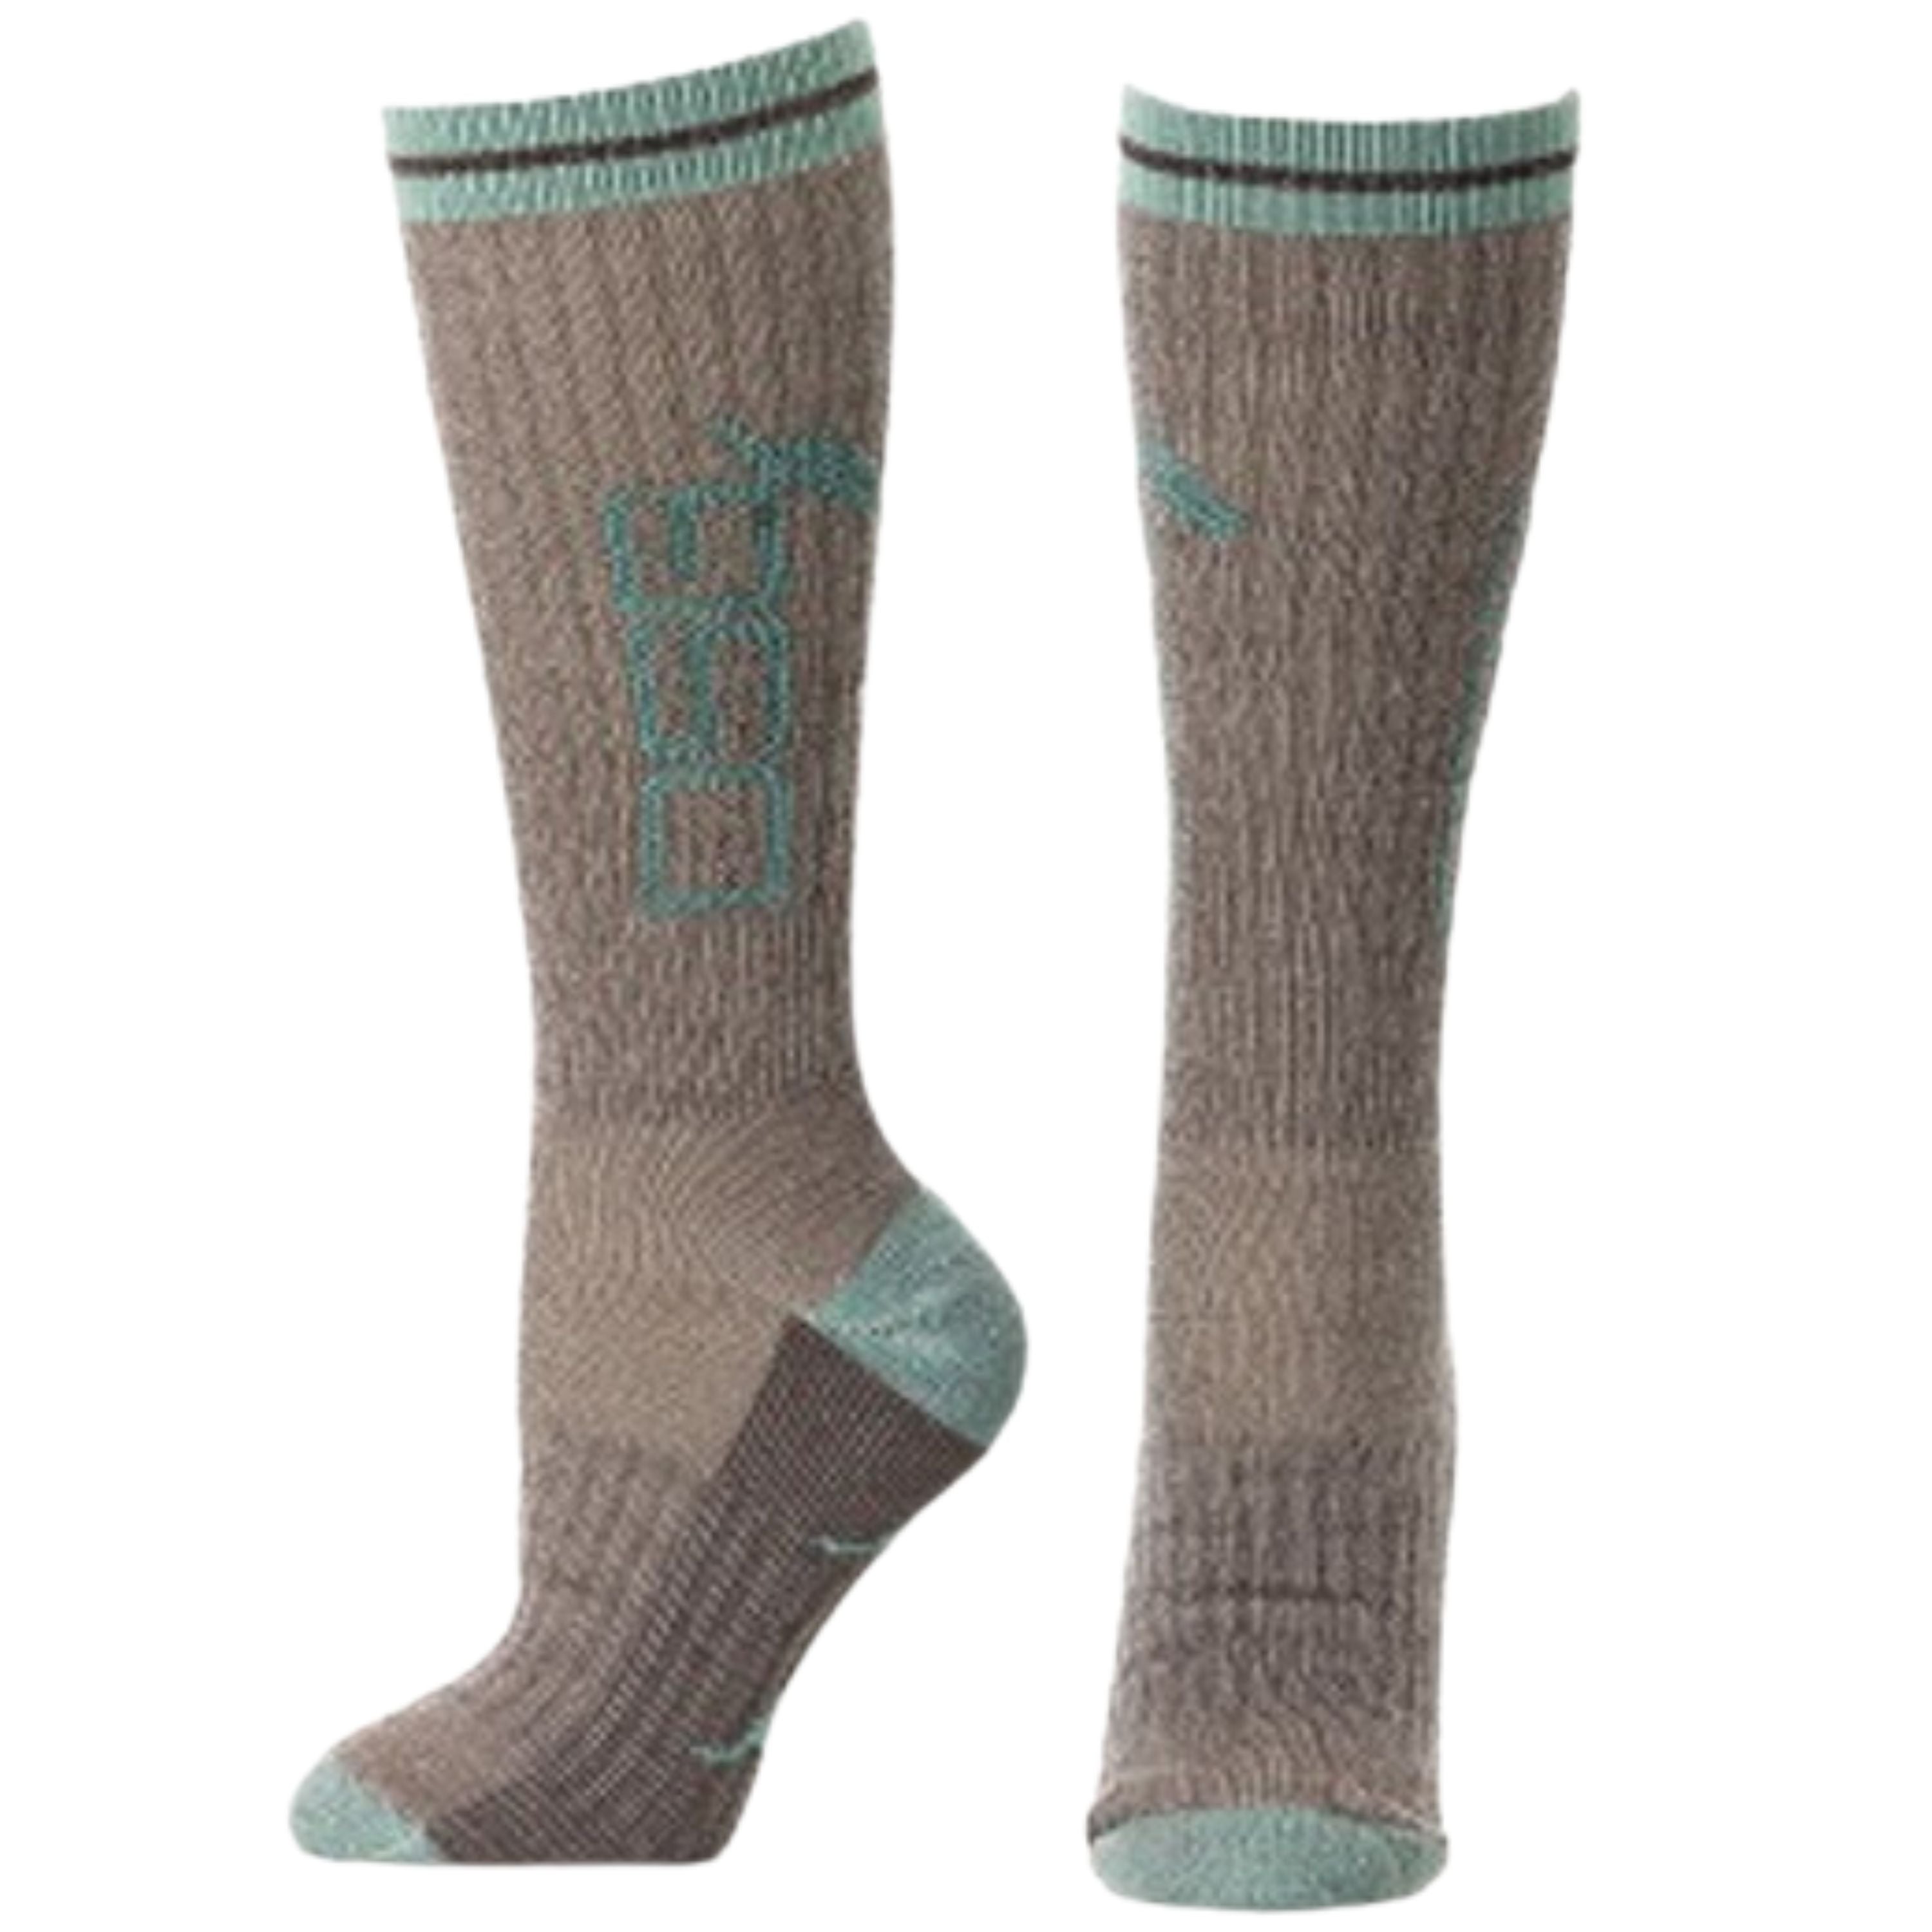 Thick merino wool socks - Women's